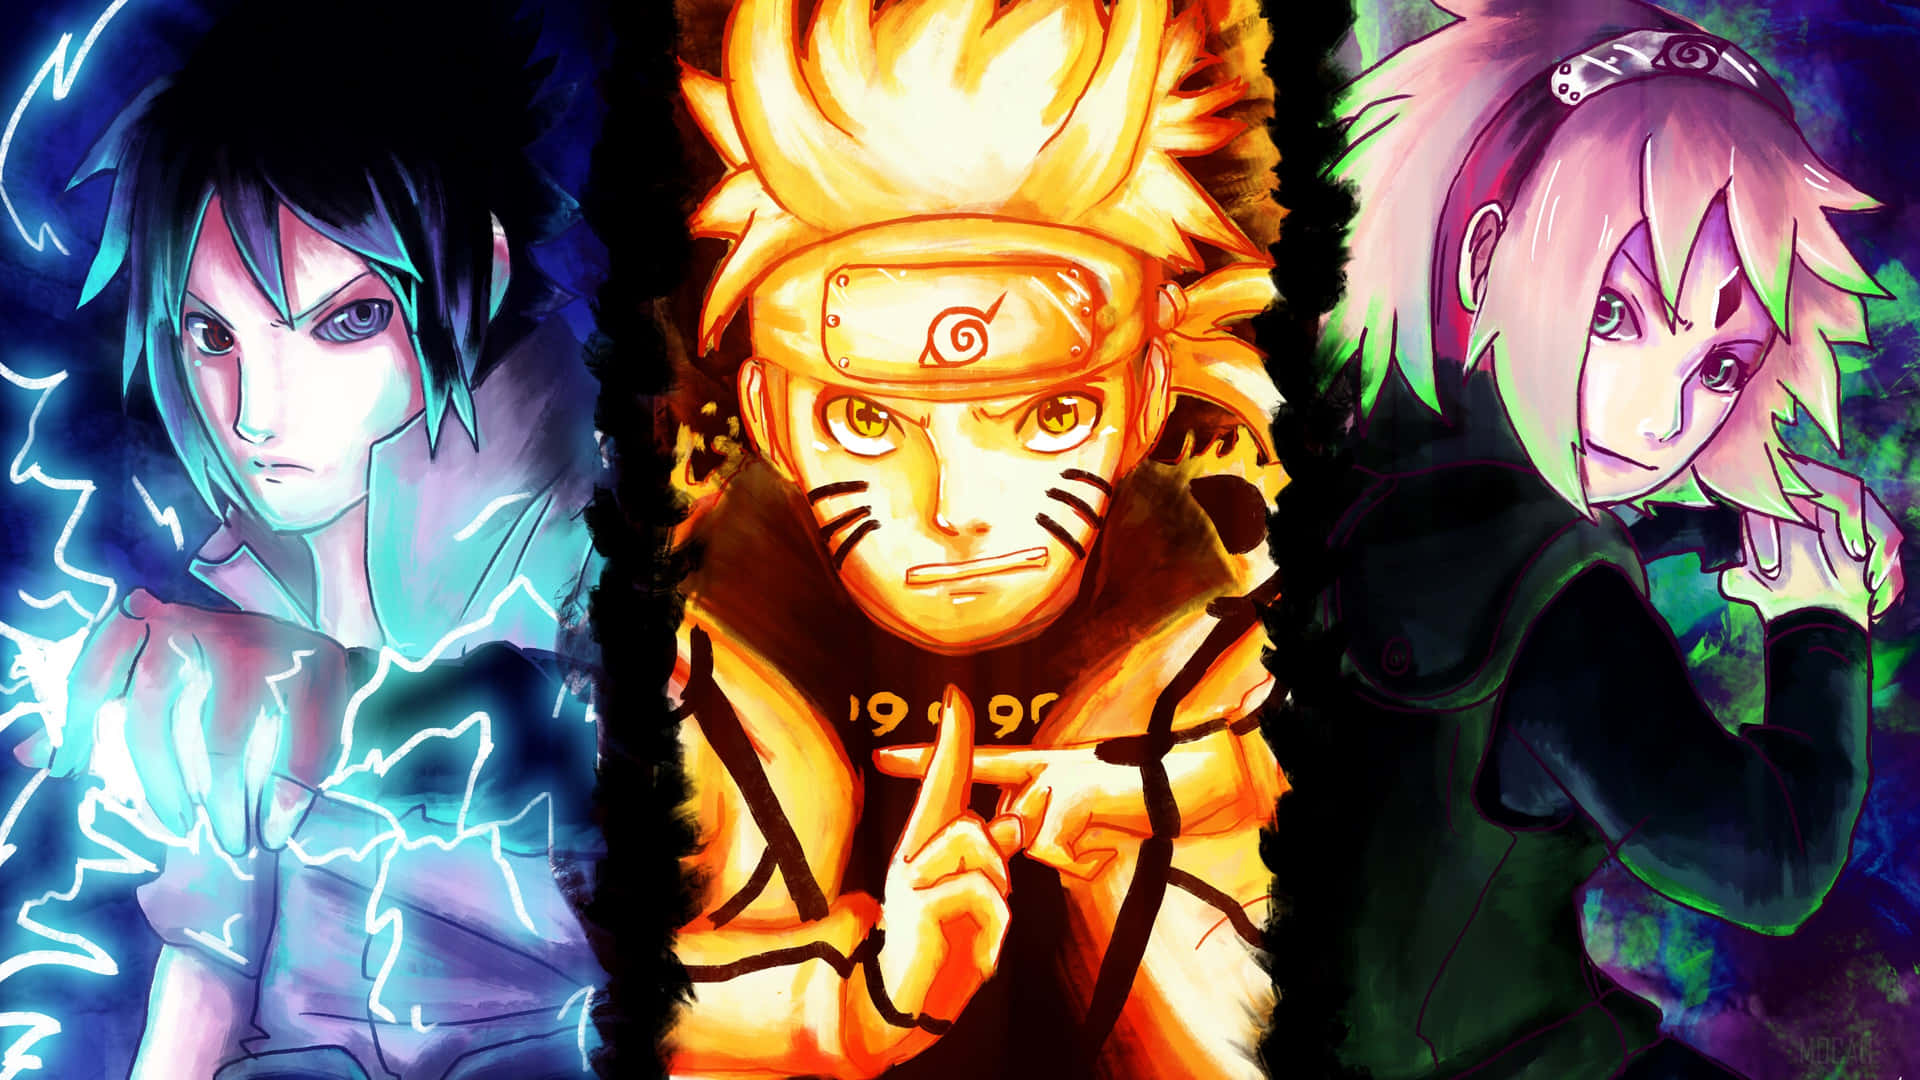 Naruto Uzumaki - Tải hình nền 4k: Ai là fan của bộ truyện Naruto? Với những hình ảnh đẹp tuyệt vời và chất lượng cao, các hình nền 4k với Naruto Uzumaki chắc chắn sẽ làm bạn phải thích thú. Hãy tải xuống và trang trí cho màn hình của mình với những bức hình đầy màu sắc và năng lượng.